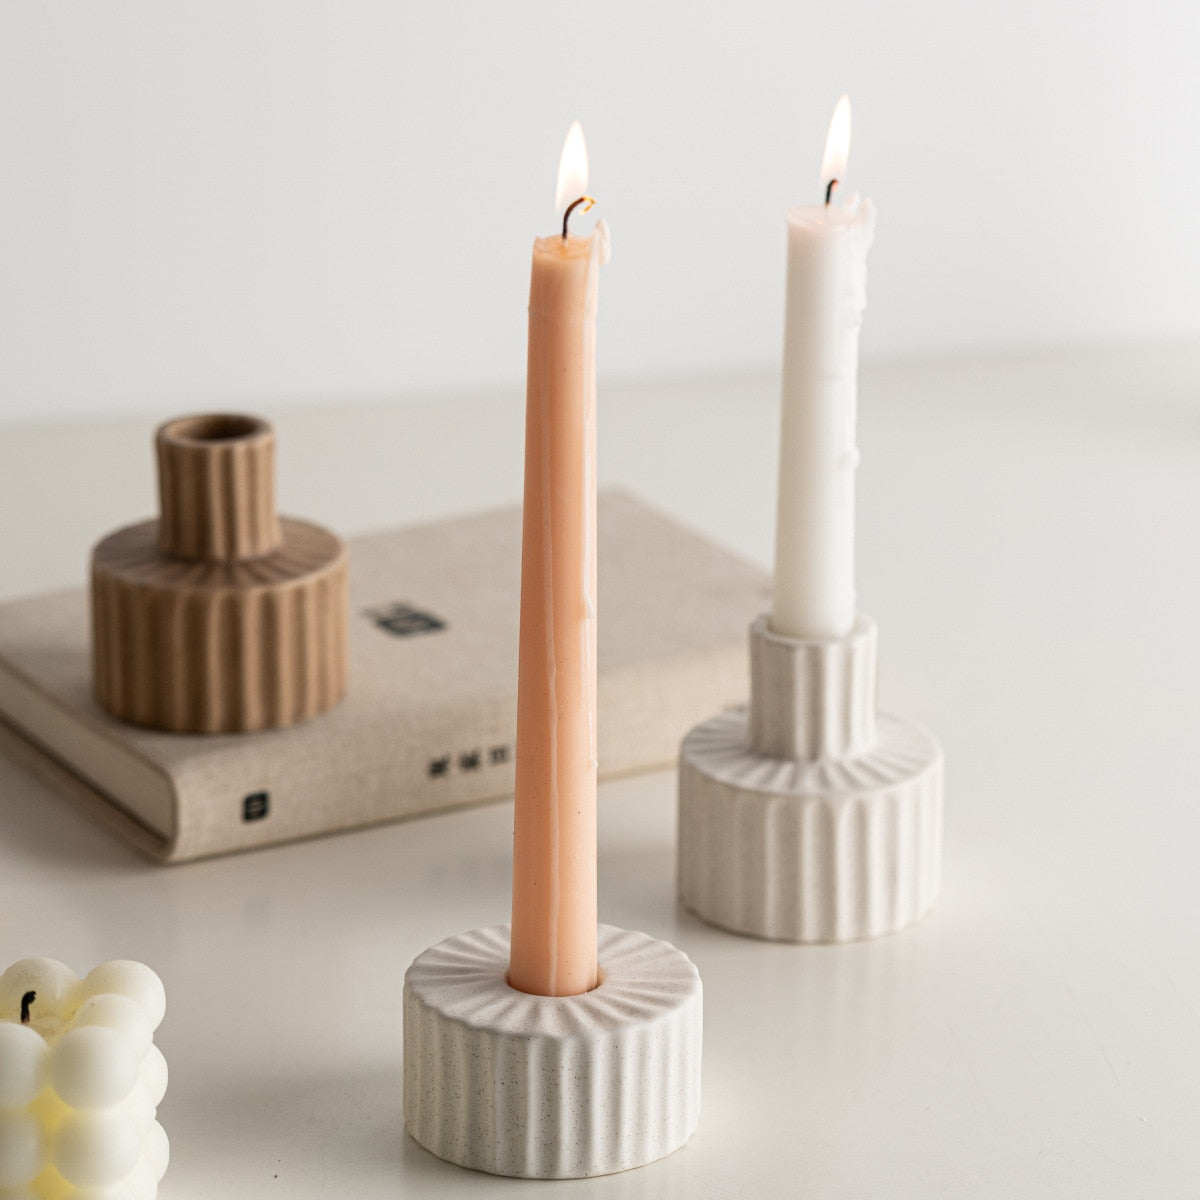 2 Set Ceramic Rigid Candle Holders